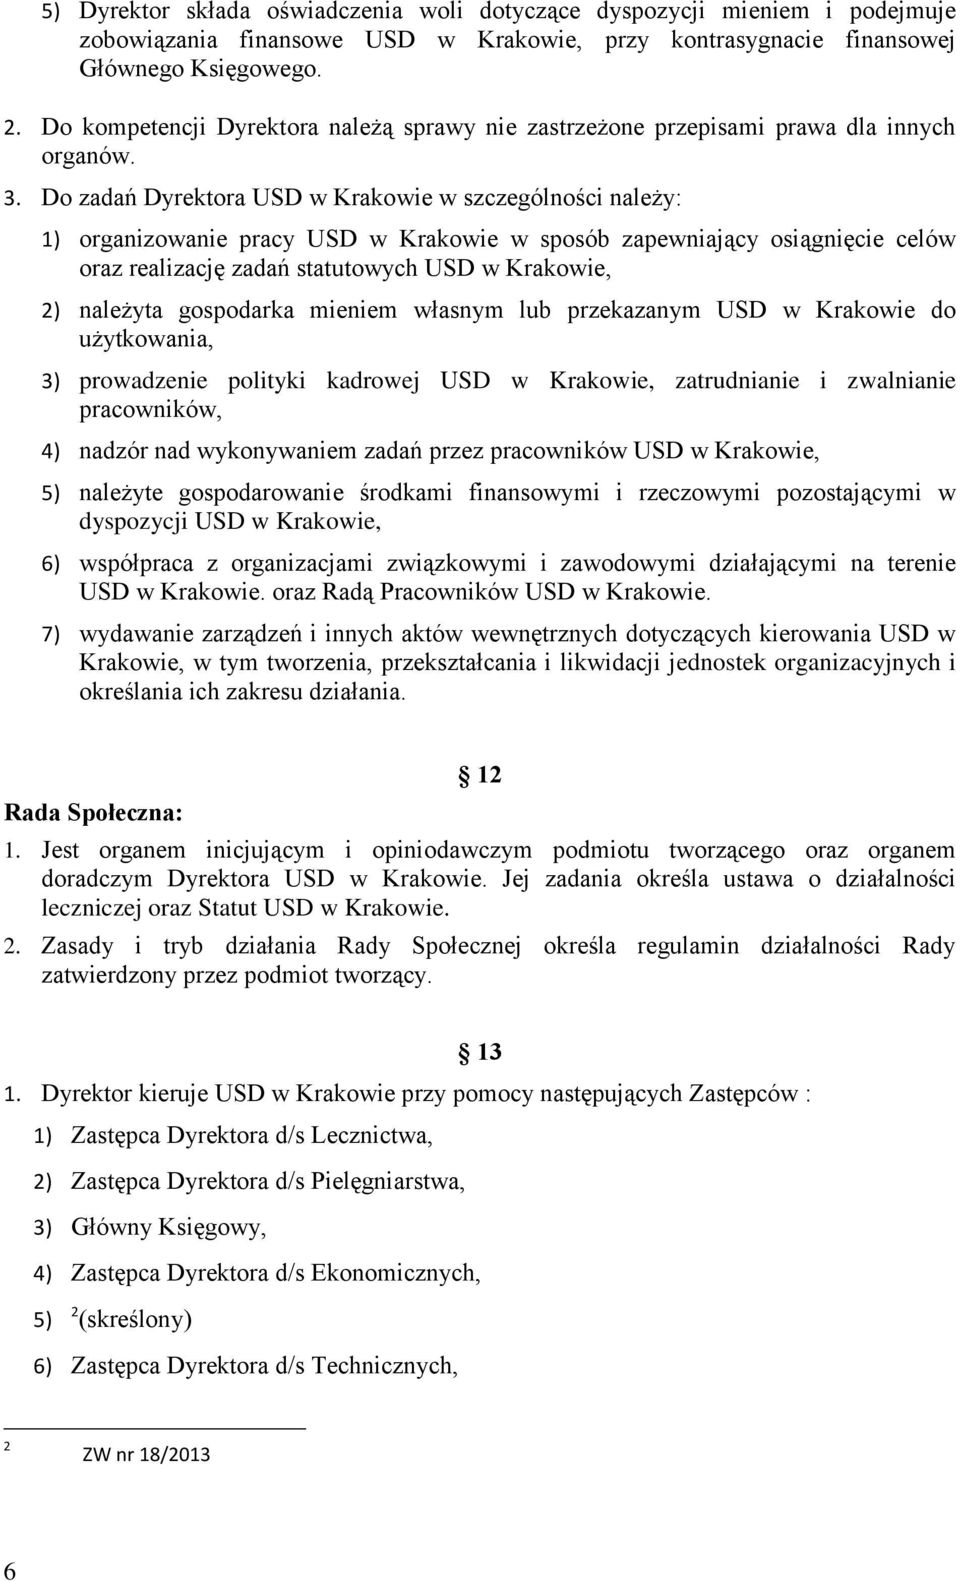 Do zadań Dyrektora USD w Krakowie w szczególności należy: 1) organizowanie pracy USD w Krakowie w sposób zapewniający osiągnięcie celów oraz realizację zadań statutowych USD w Krakowie, 2) należyta